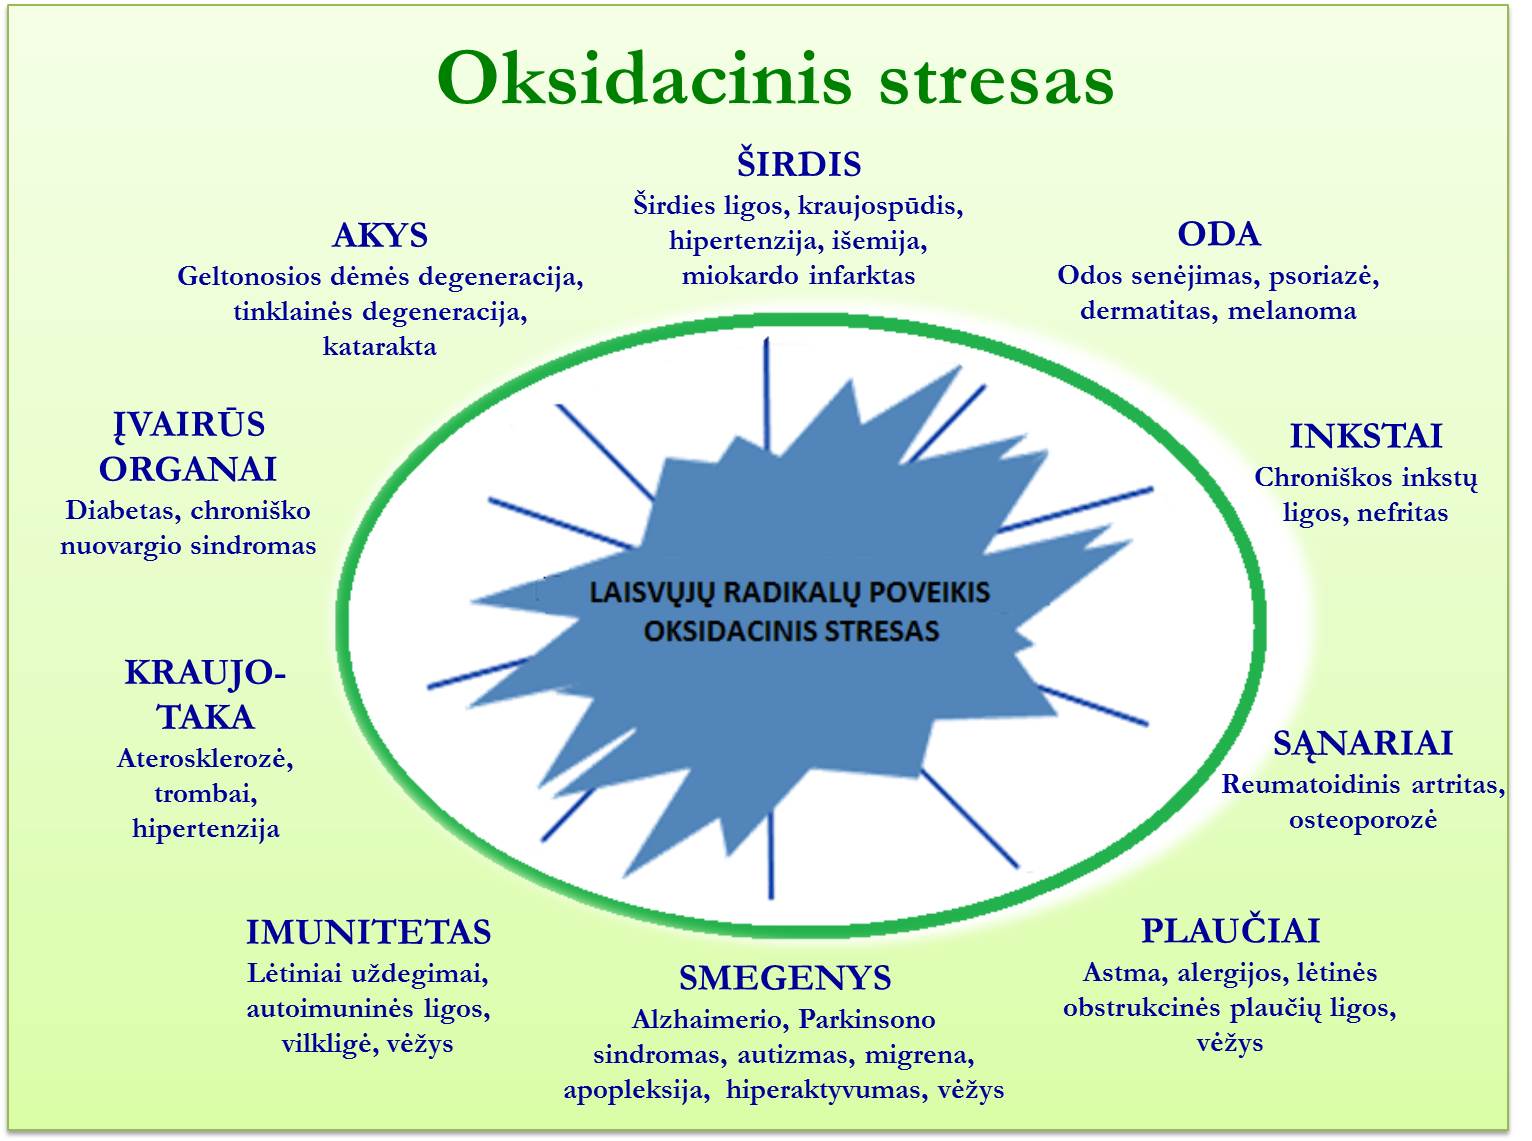 Oksidacinis stresas